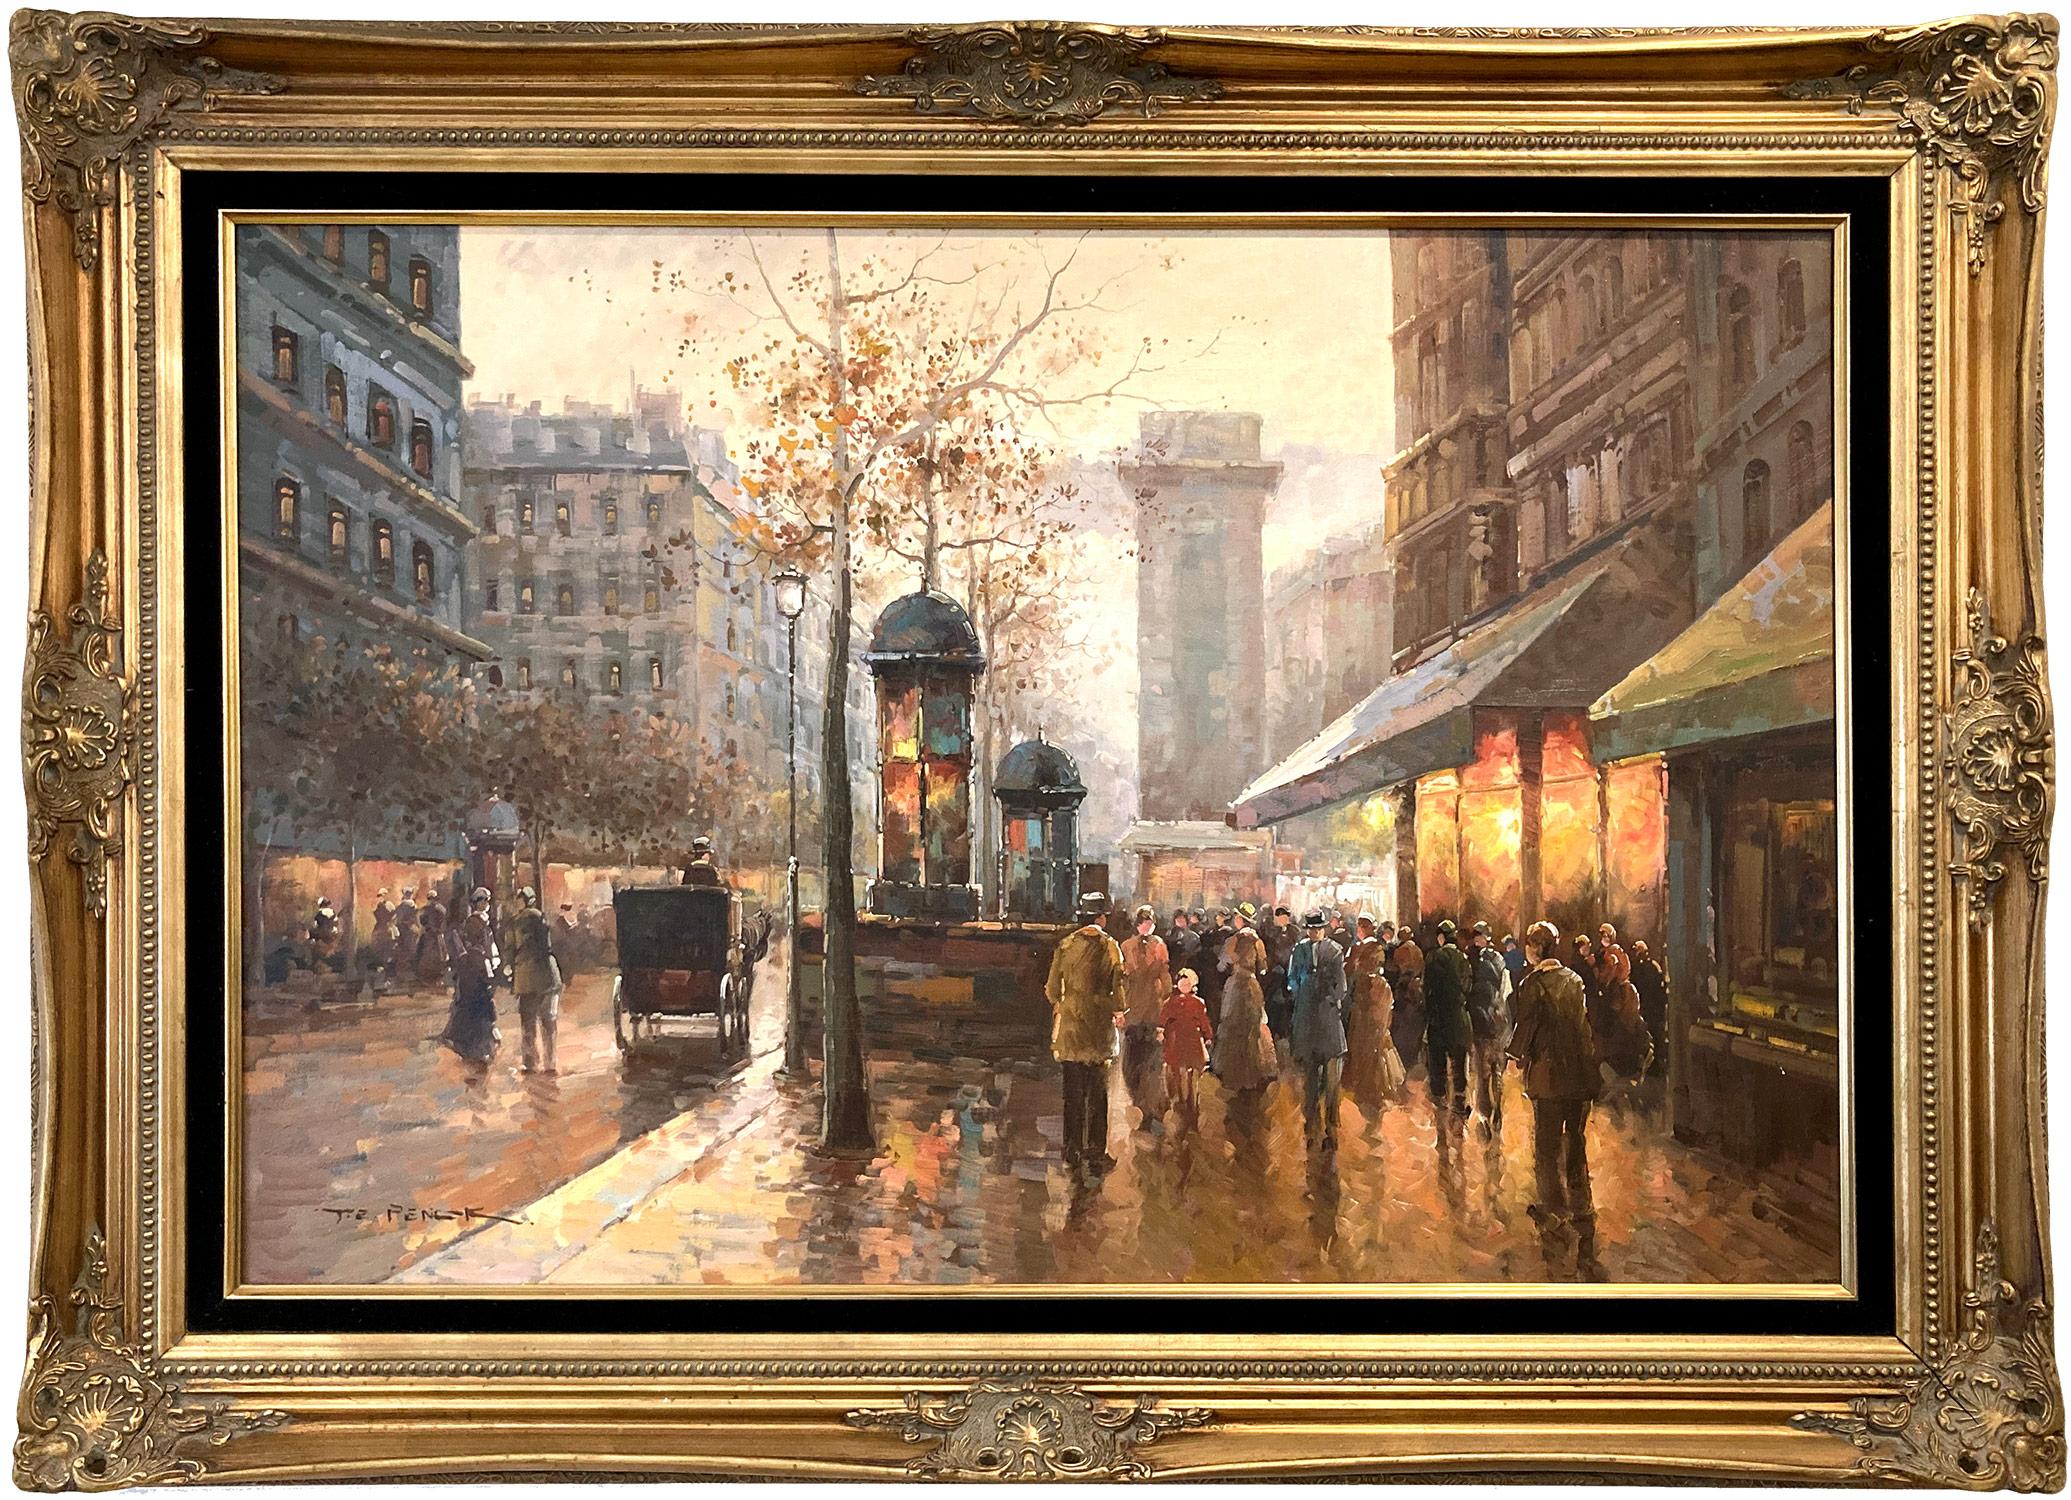 Landscape Painting Te Pencke - "Boulevard à Paris" Peinture à l'huile sur toile - Scène de rue parisienne post-impressionniste